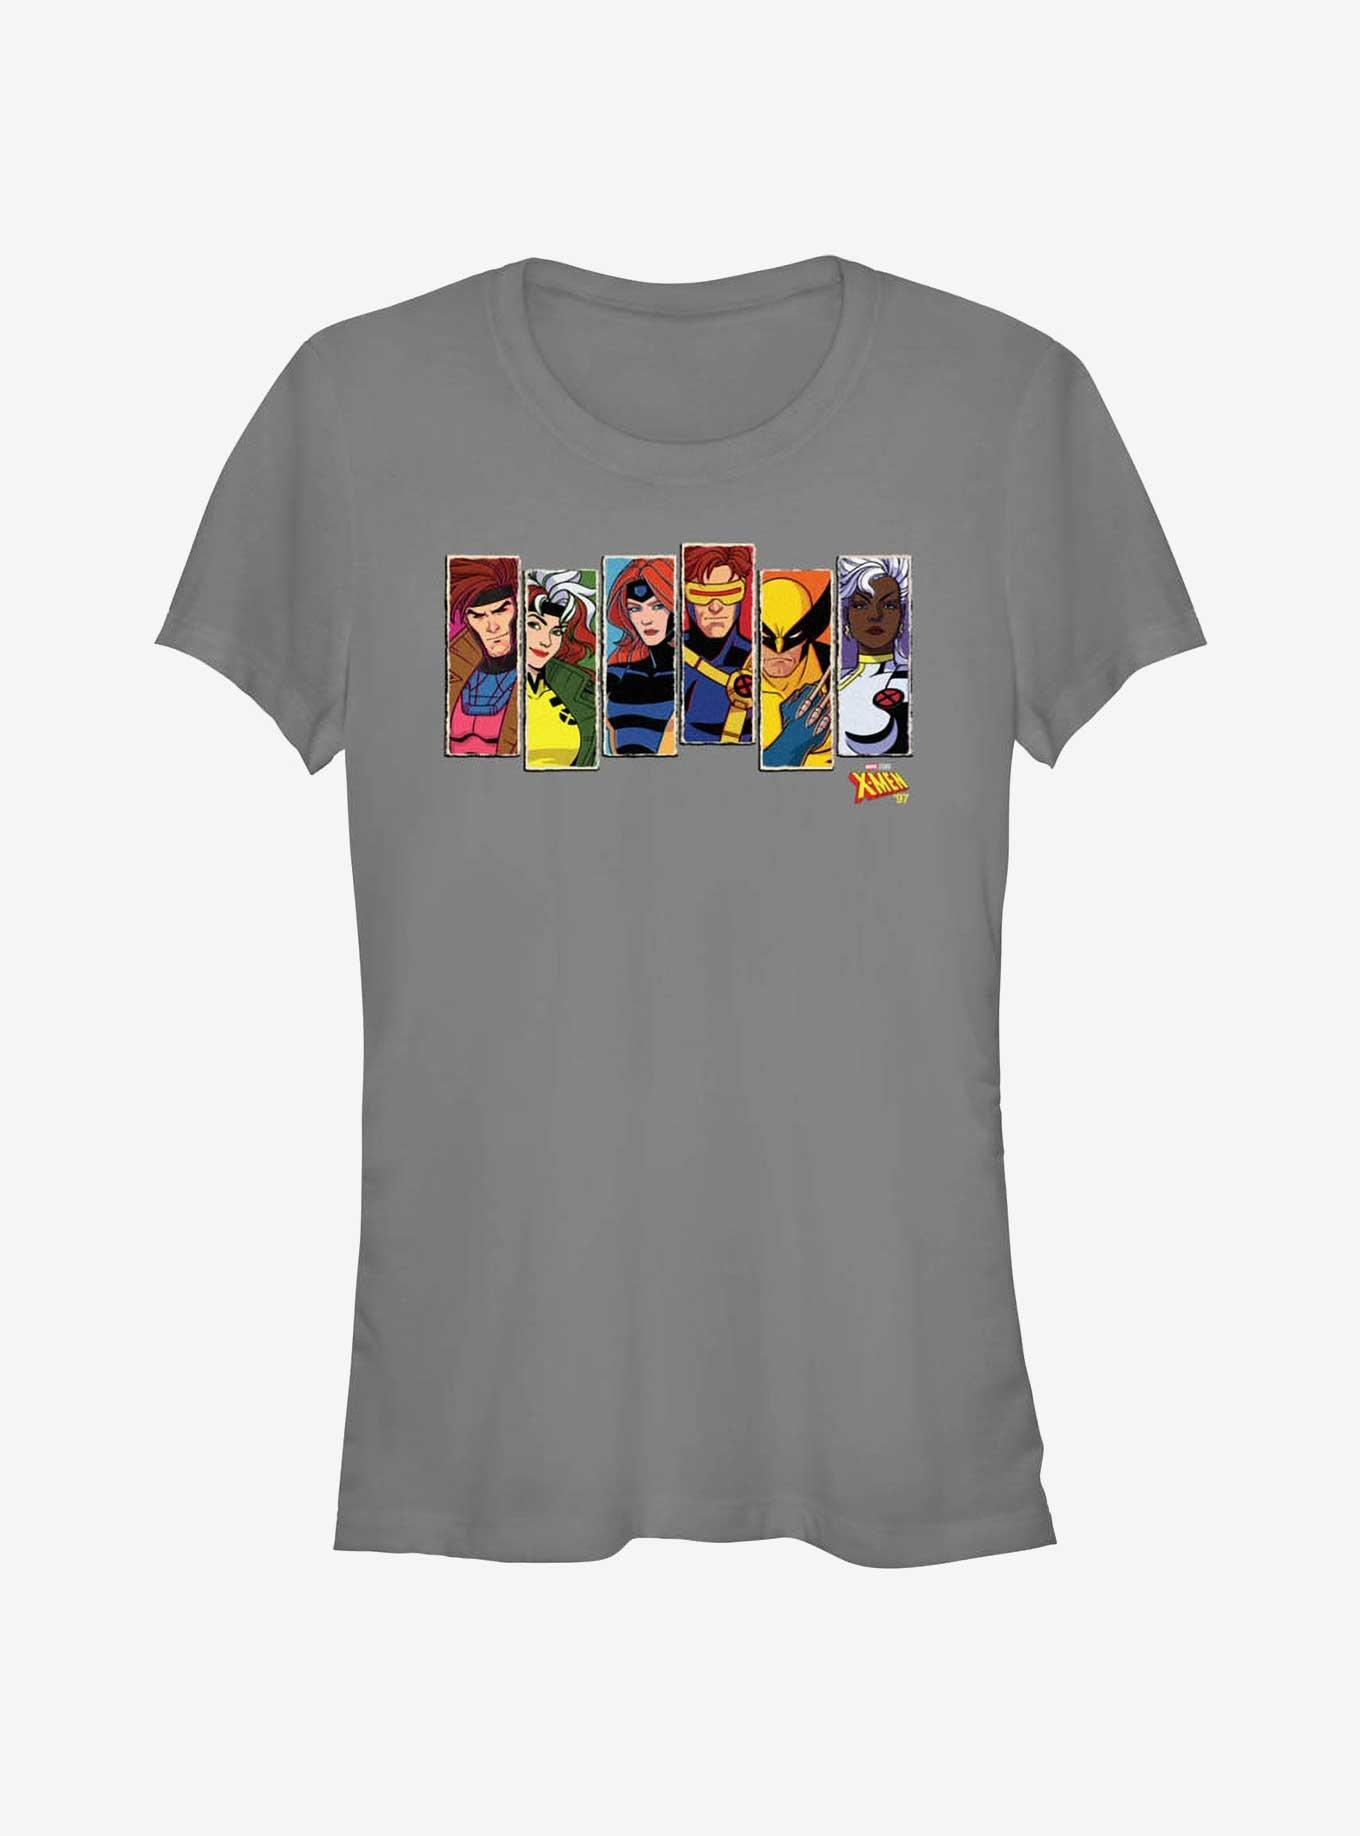 X-Men '97 Vertical Portraits Girls T-Shirt, CHARCOAL, hi-res